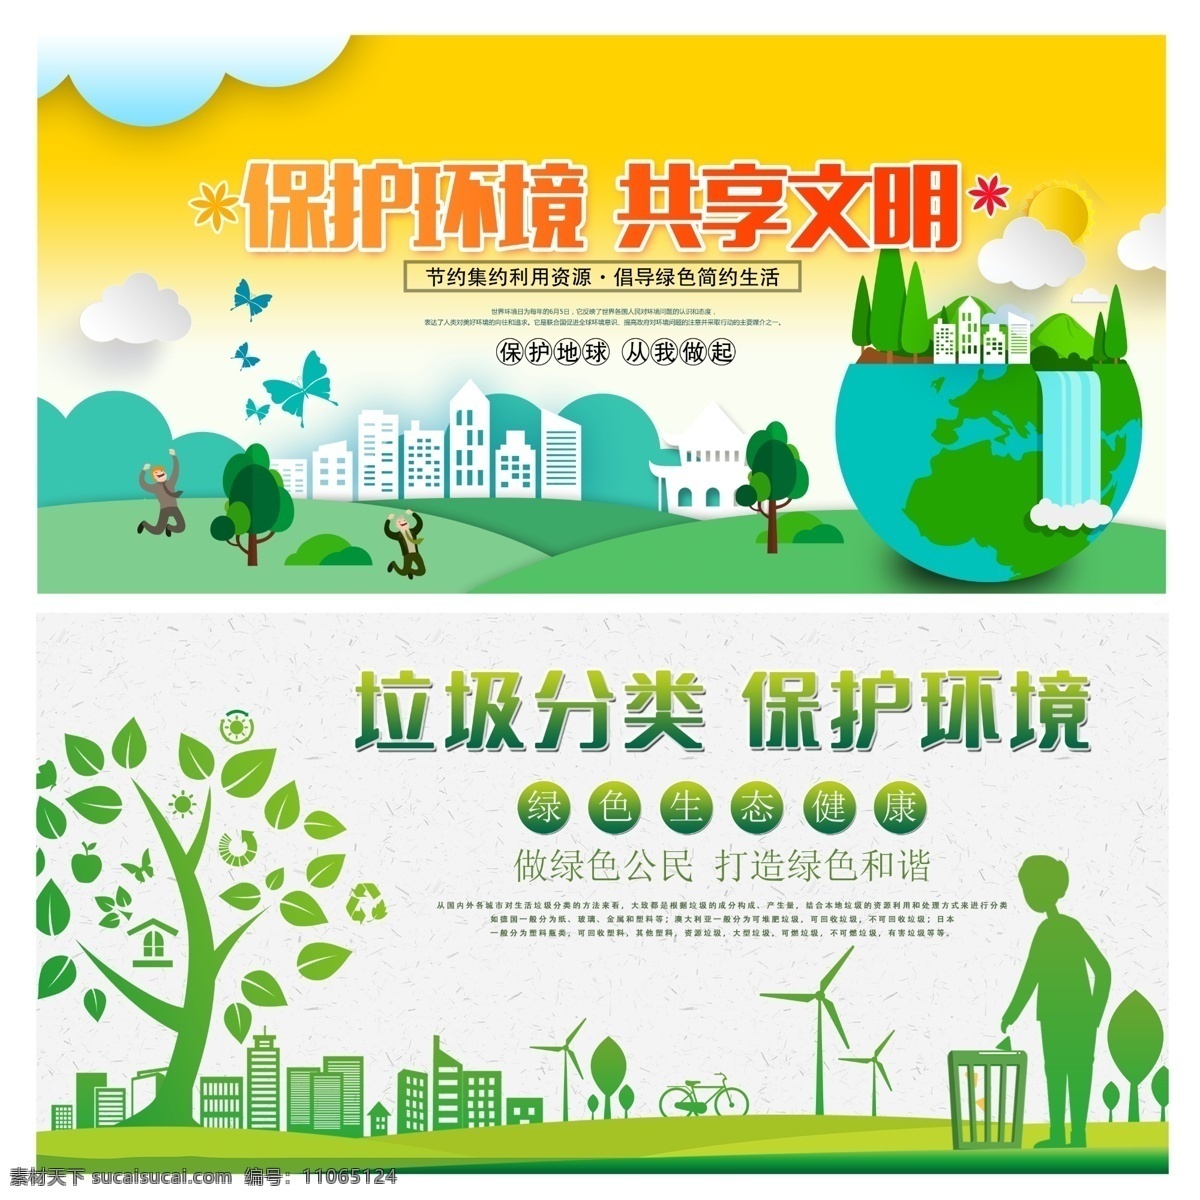 保护环境图片 保护环境 垃圾分类 共享文明 爱护环境 绿色环境 绿色海报 环境 分类垃圾 文明 环保 环保海报